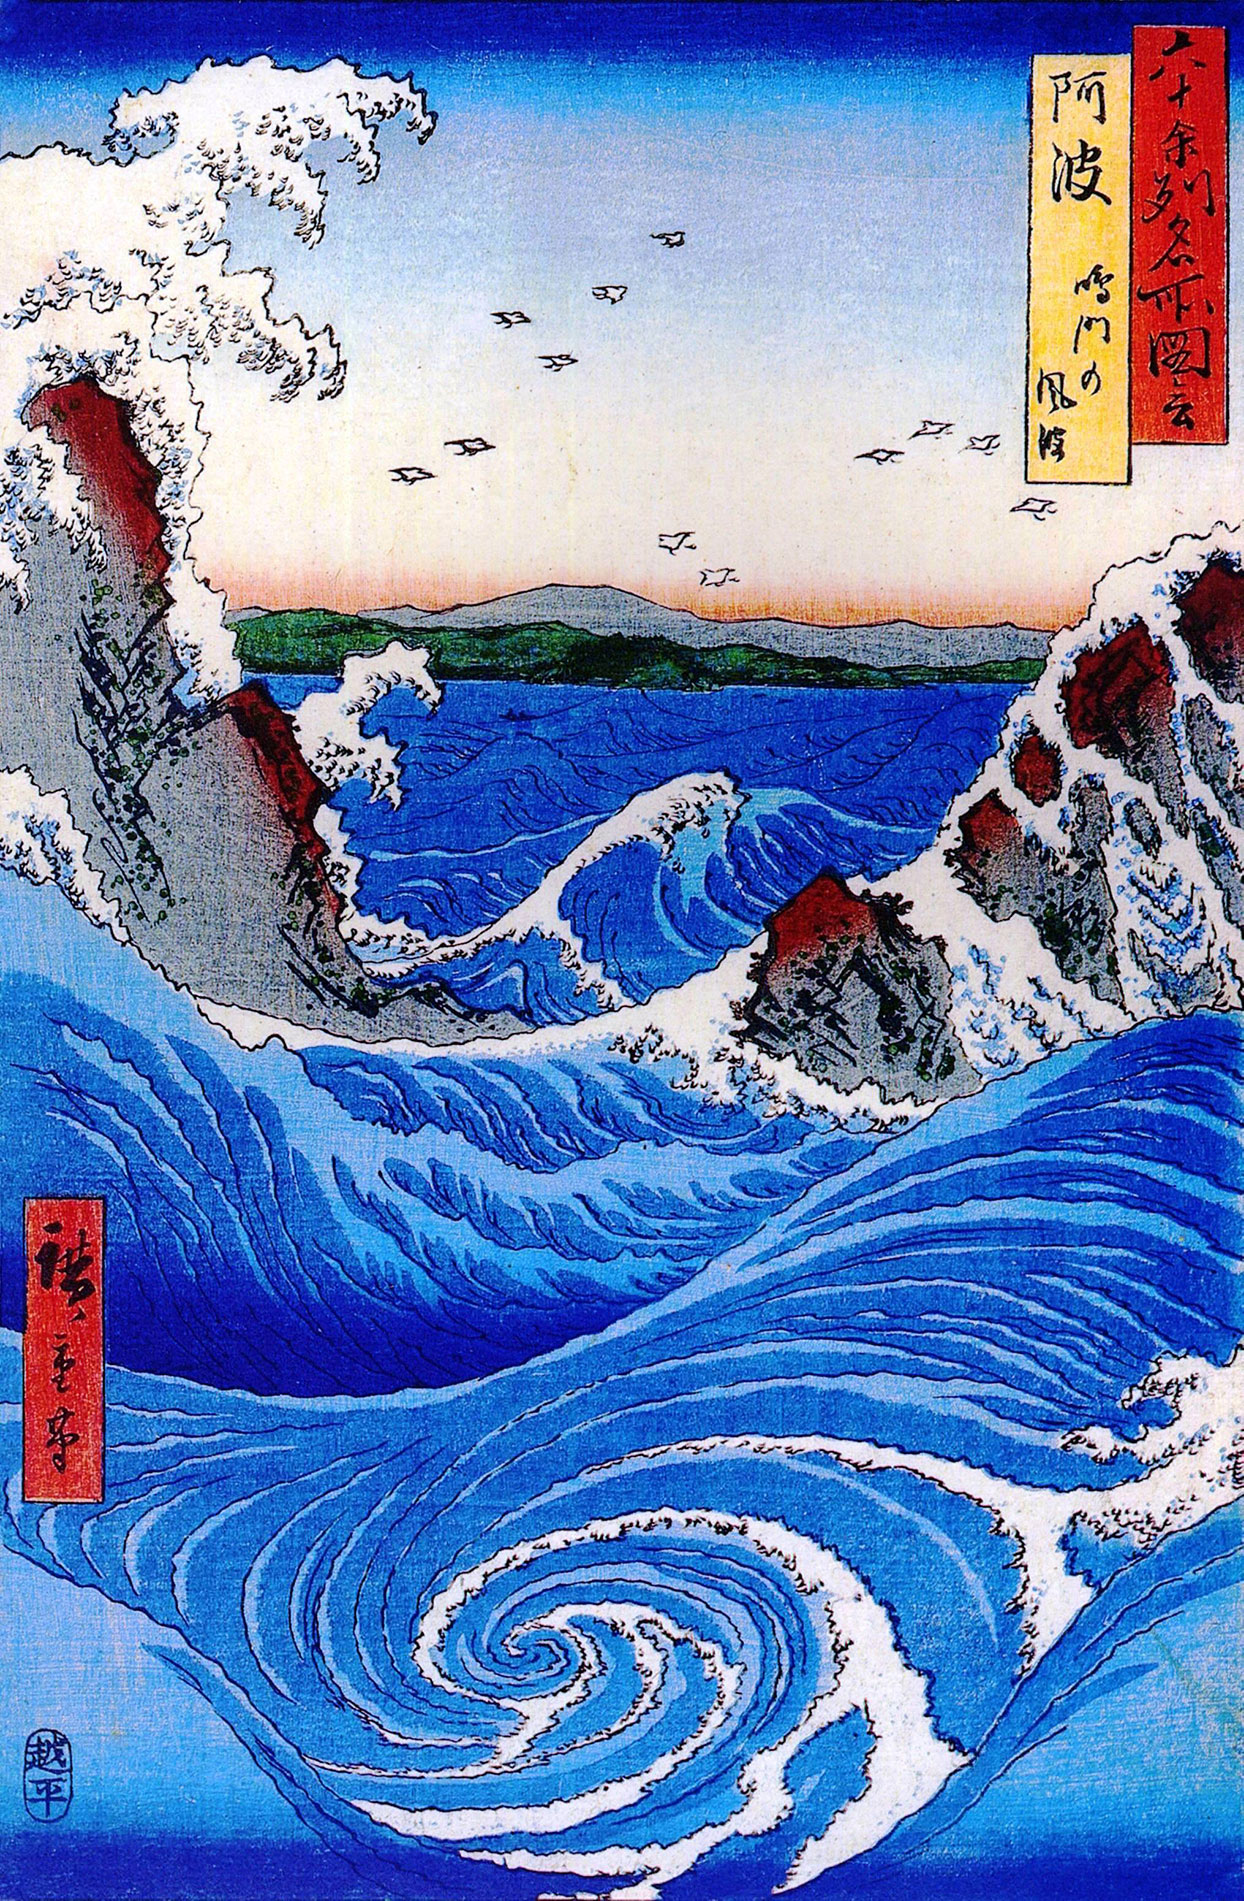 Bild Nummer 55 der Serie "Berühmte gegenden der mehr als 60 provinzen" von Utagawa Hiroshige zeigt die Strudel von Naruto. Damals noch in der Provinz Awa gelegen. (Foto: Utagawa Hiroshige, Wikimedia Commons https://en.wikipedia.org/wiki/File:Hiroshige_Wild_sea_breaking_on_the_rocks.jpg, Public Domain)